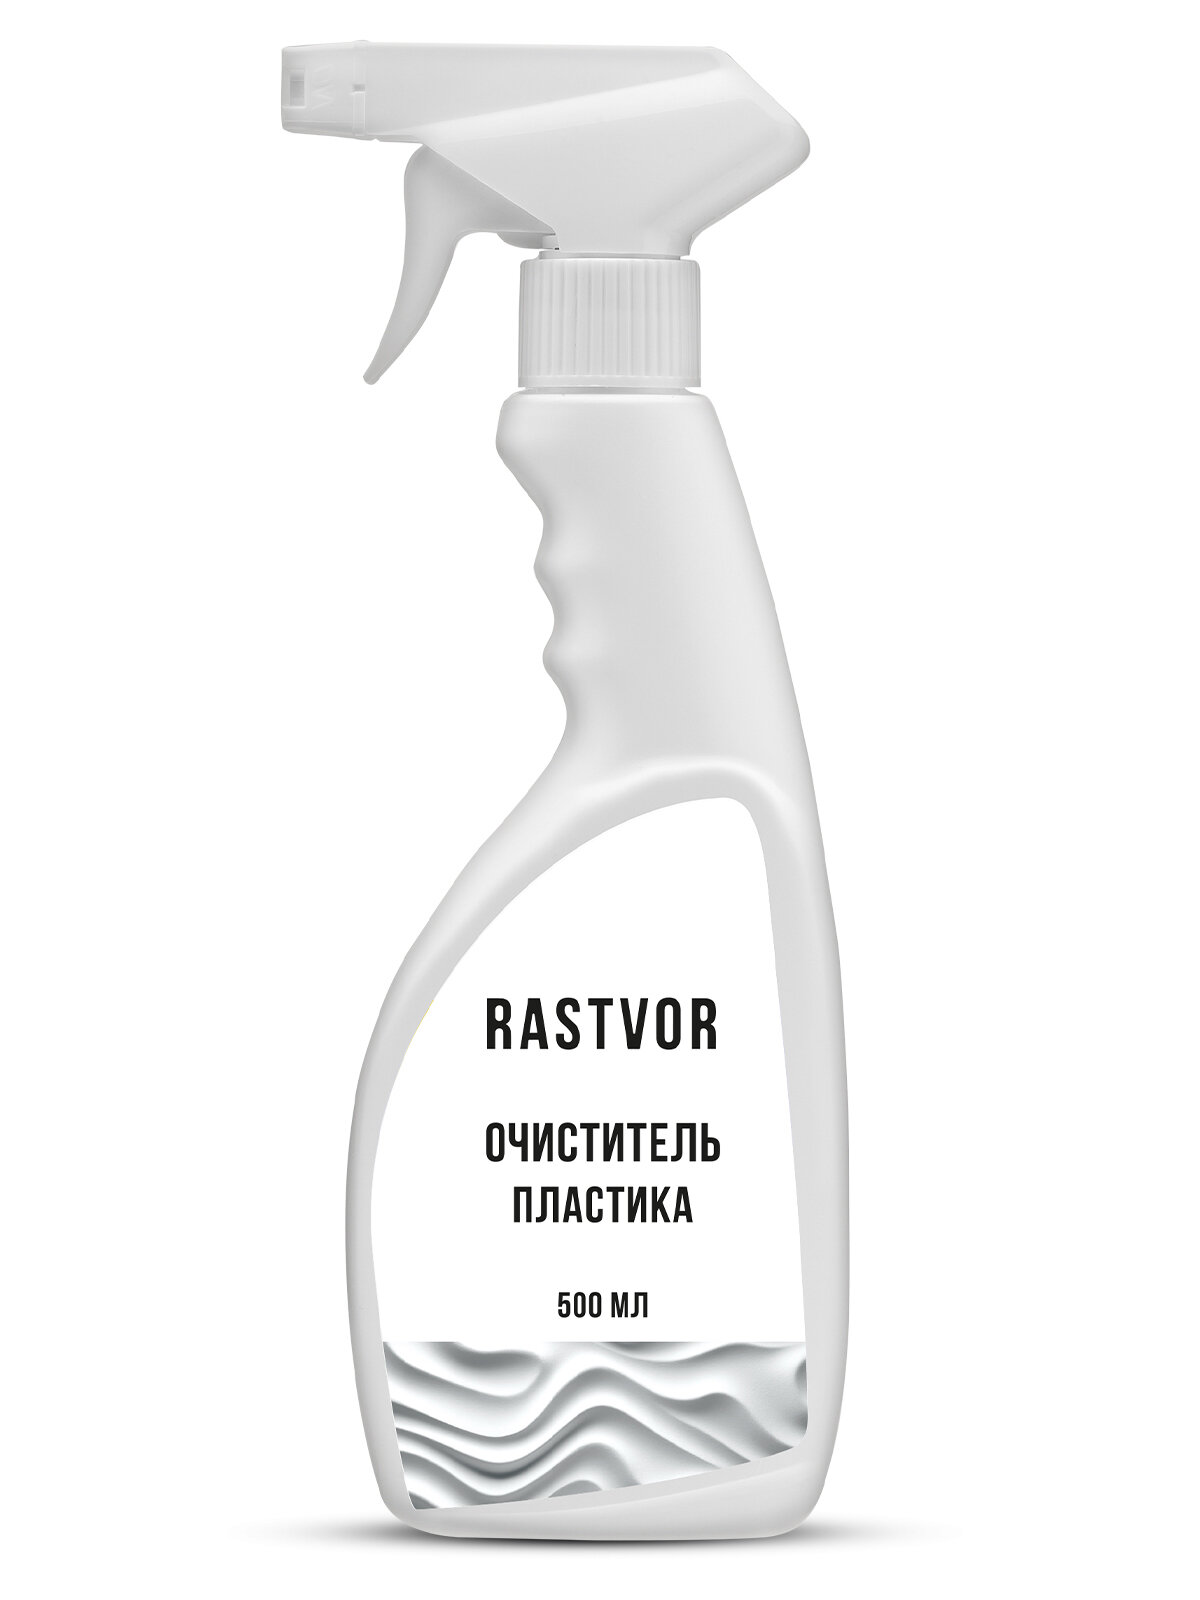 Очиститель пластика для мытья окон, RASTVOR